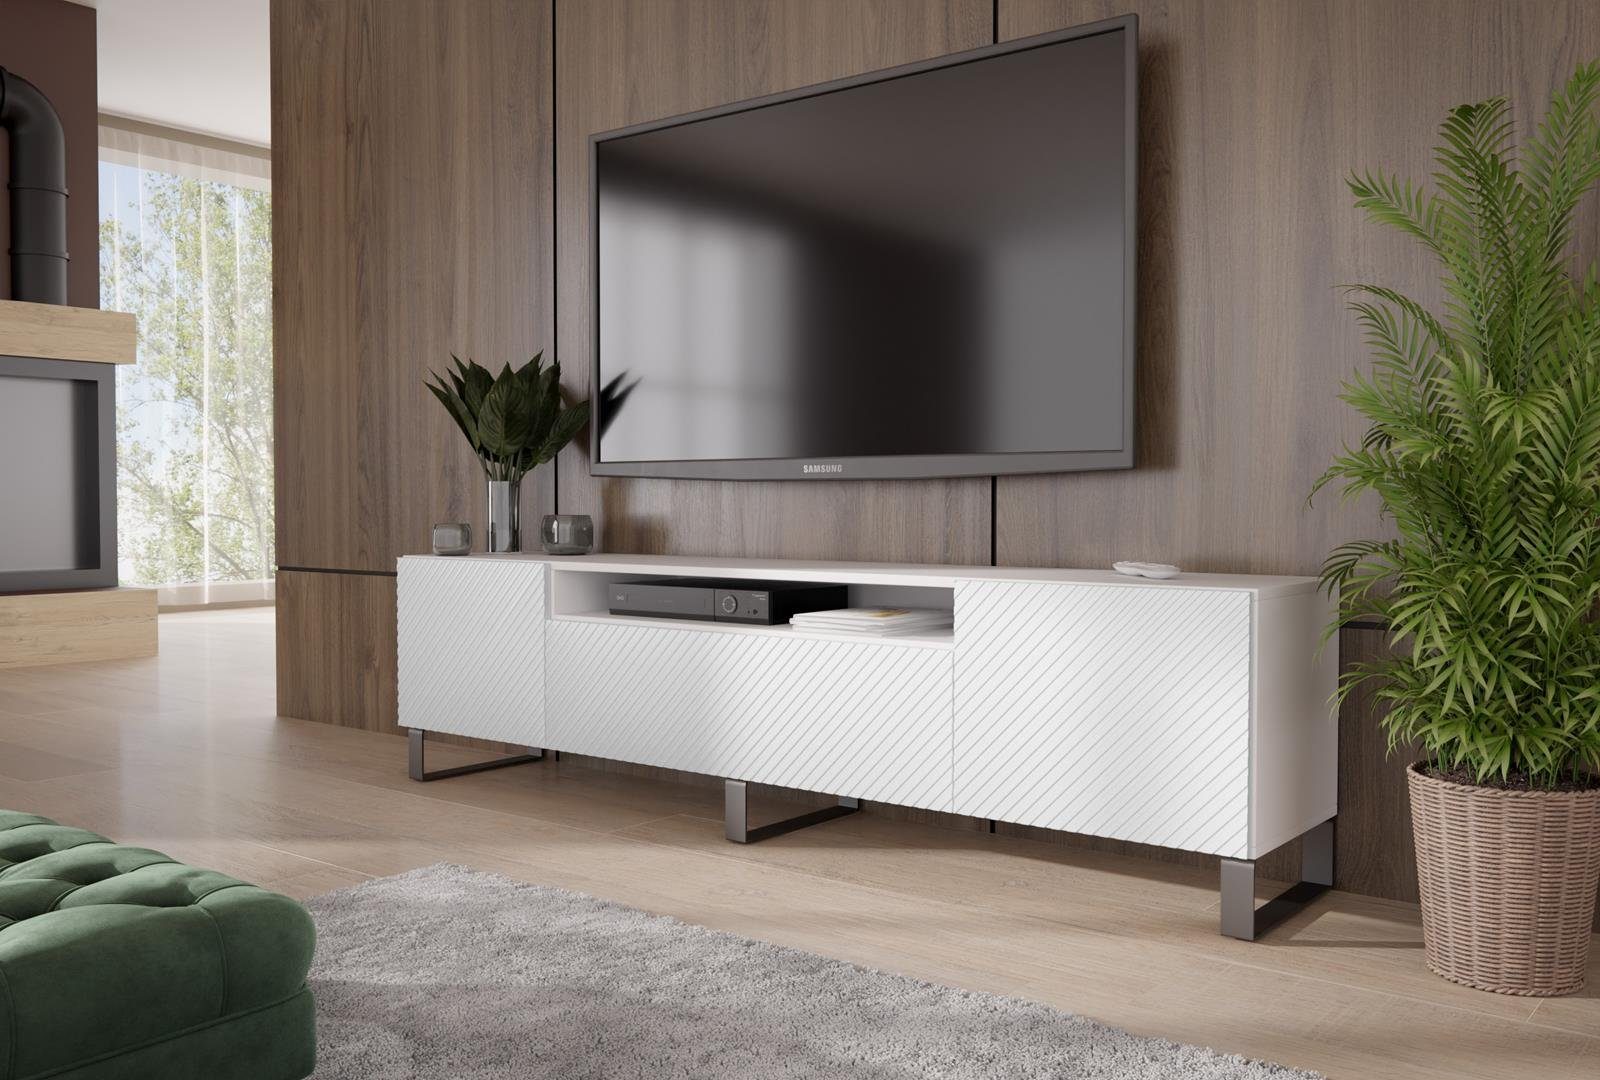 Beautysofa TV-Schrank Kler (weiß / schwarz) im modernes Stil, RTV Schrank für Wohnzimmer, dreitürig Lowboard